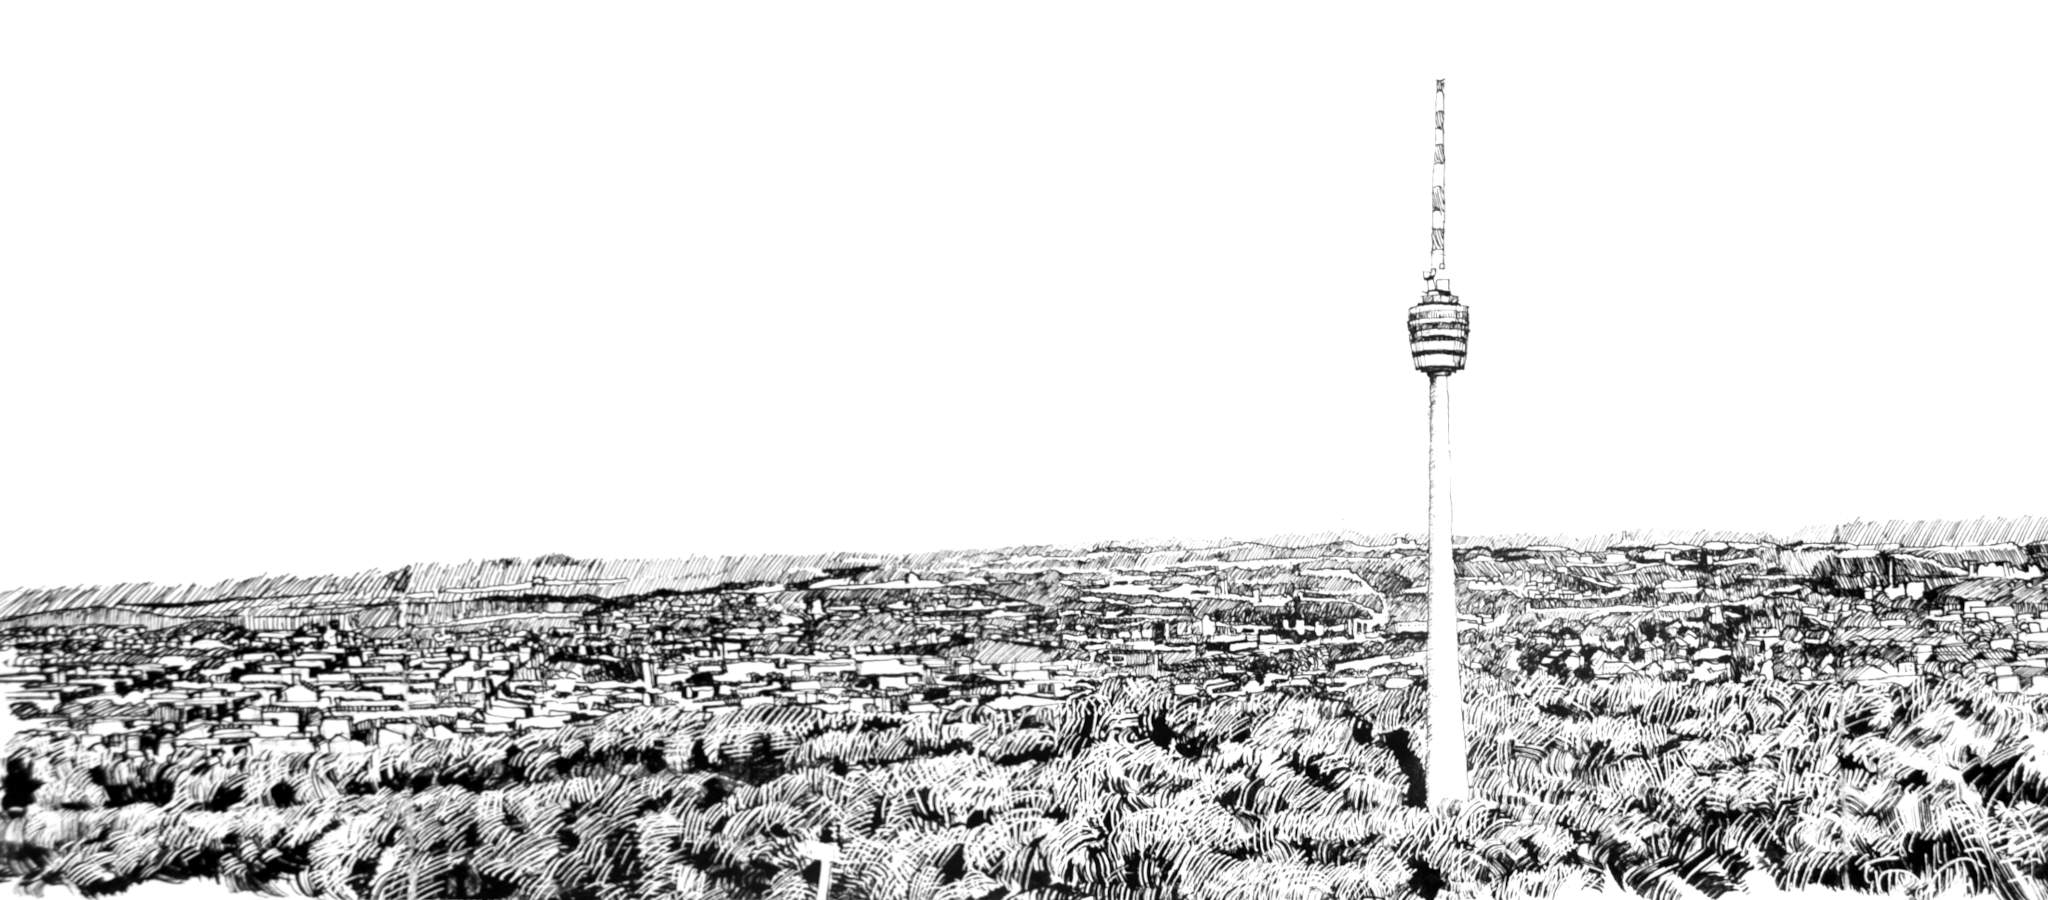 gezeichnete Skyline von Stuttgart mit Fernsehturm rechts im Vordergrund